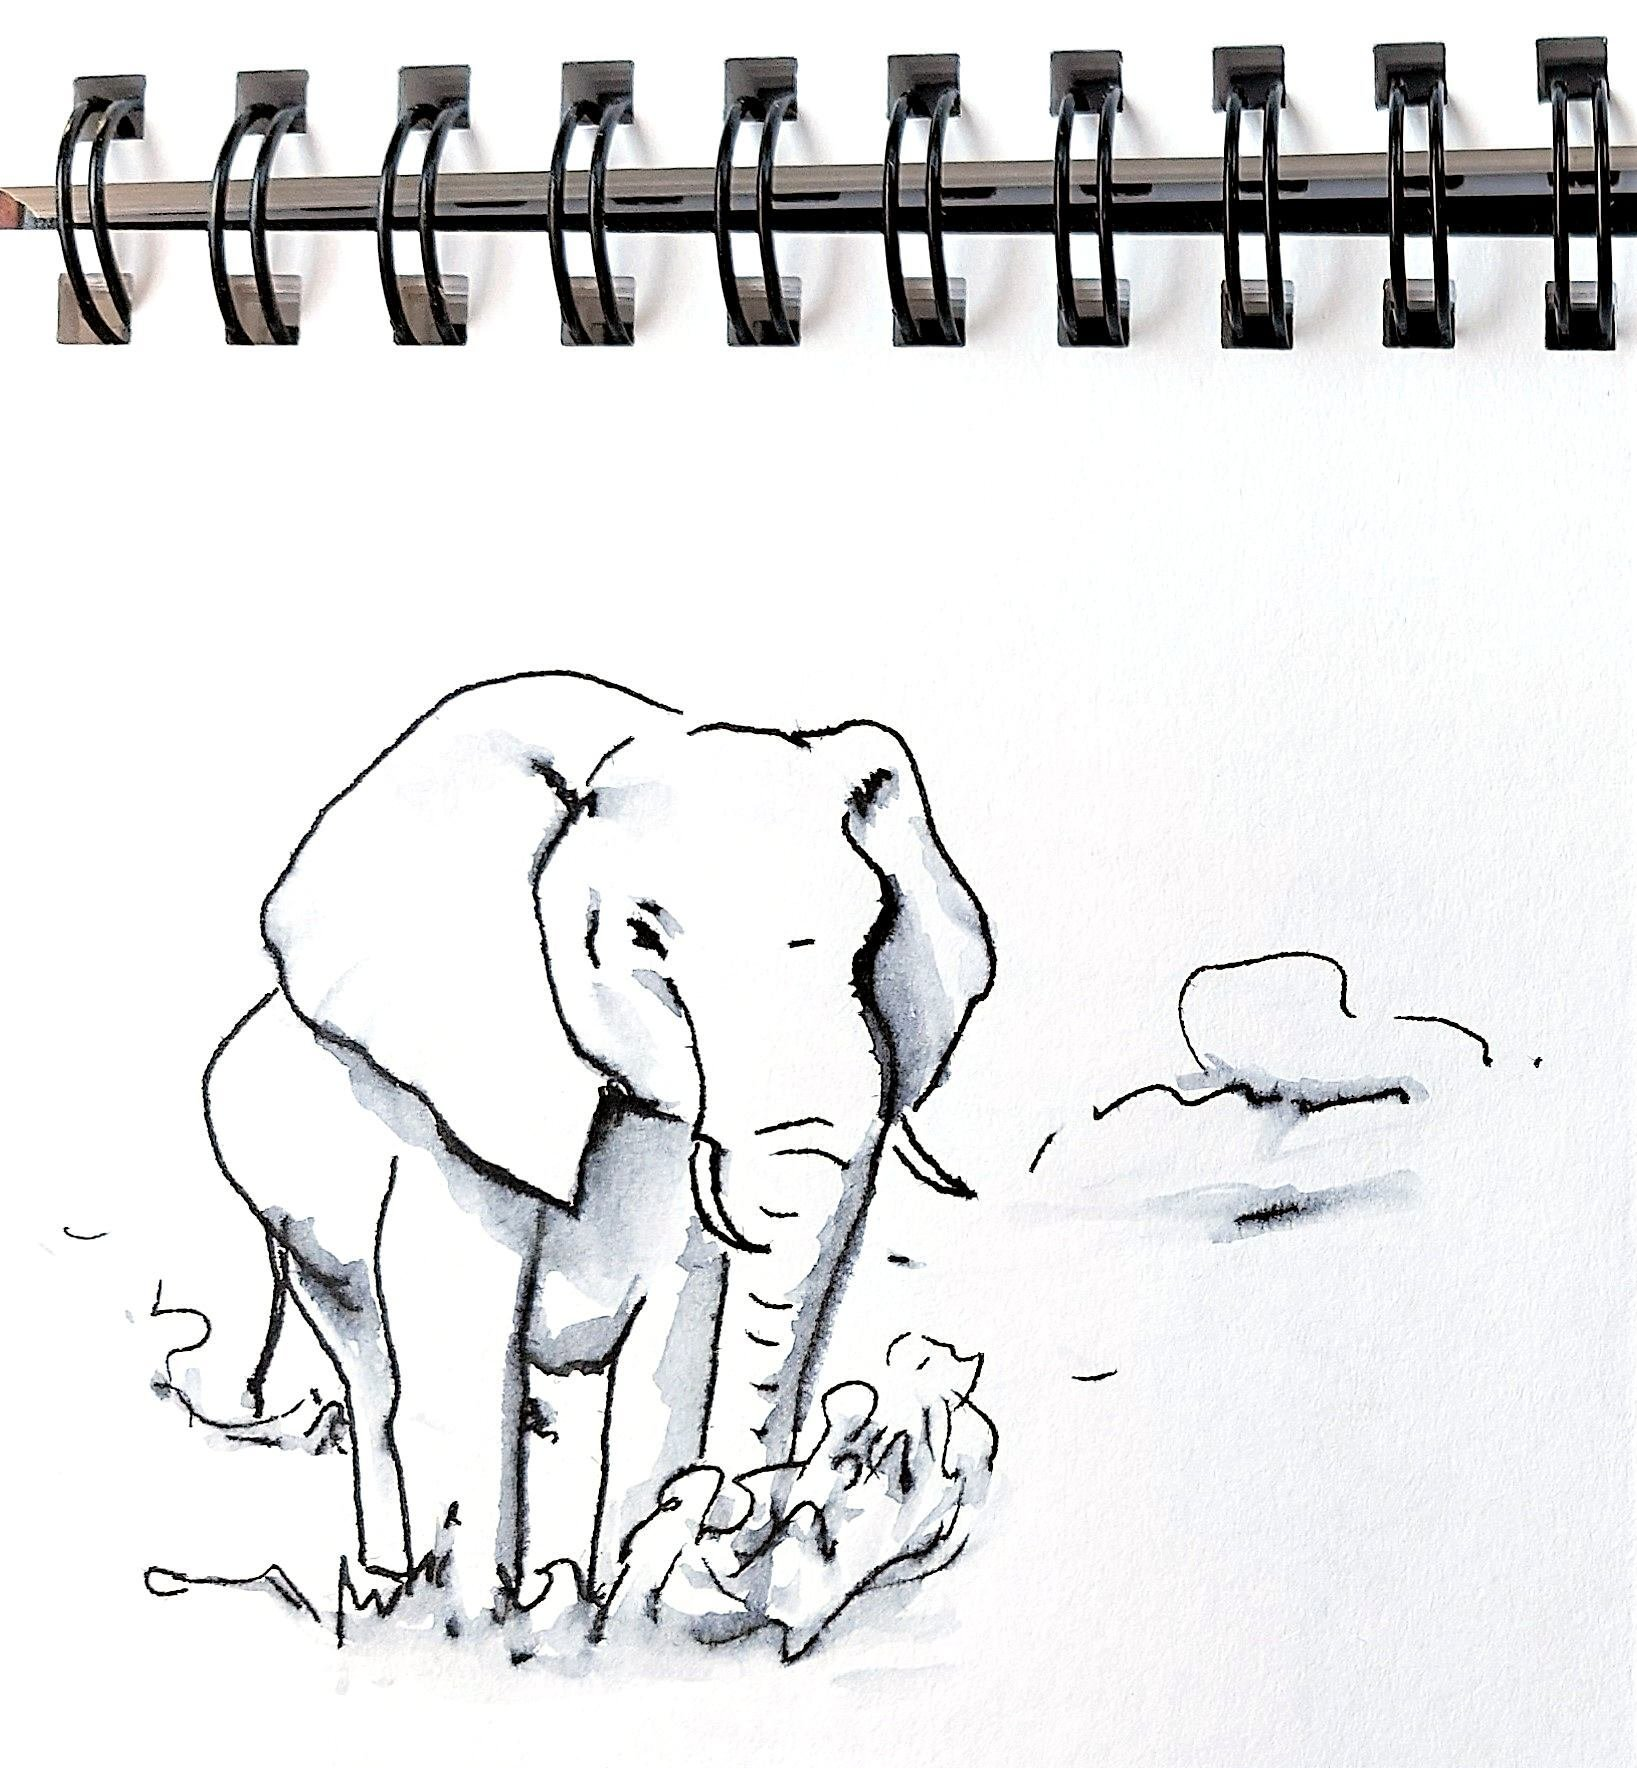 Zur Vorbereitung auf die Malreise nach Südafrika mit Bianca Leidner kann im Malworkshop das zeichnen solcher Skizzen z.B. eines Elefanten gelernt werden